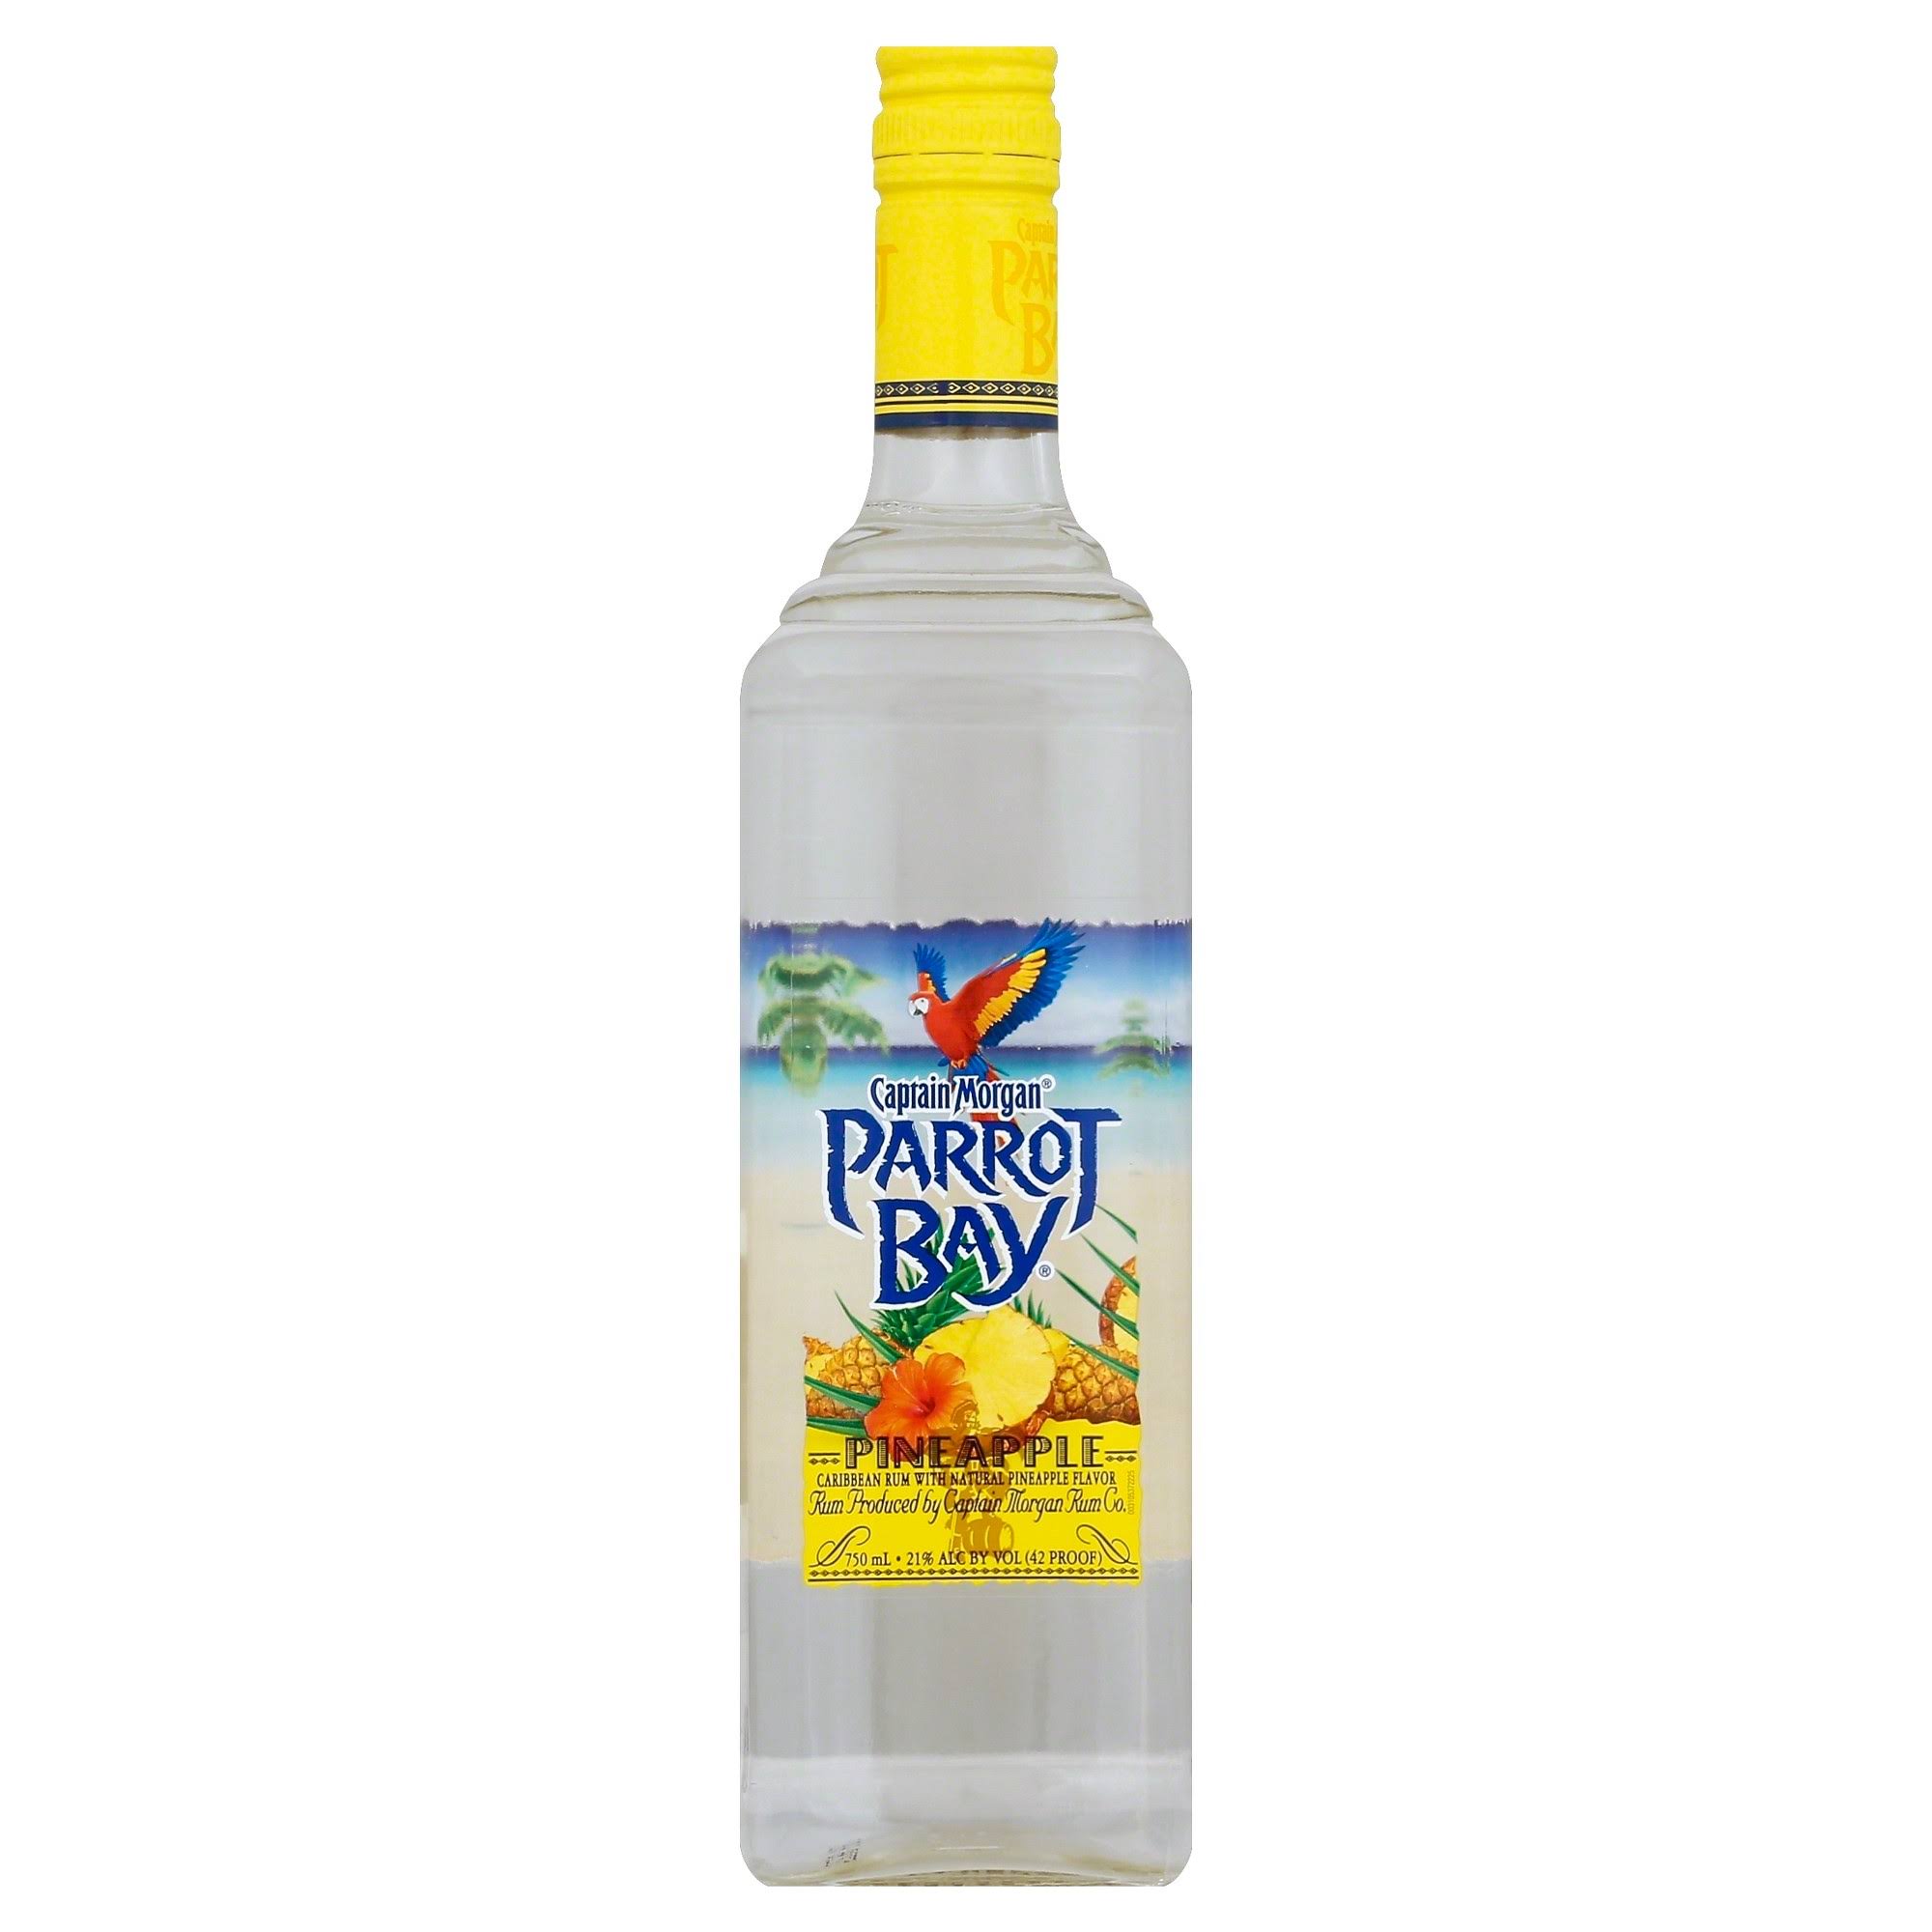 Parrot Bay Pineapple Rum - 750 ml